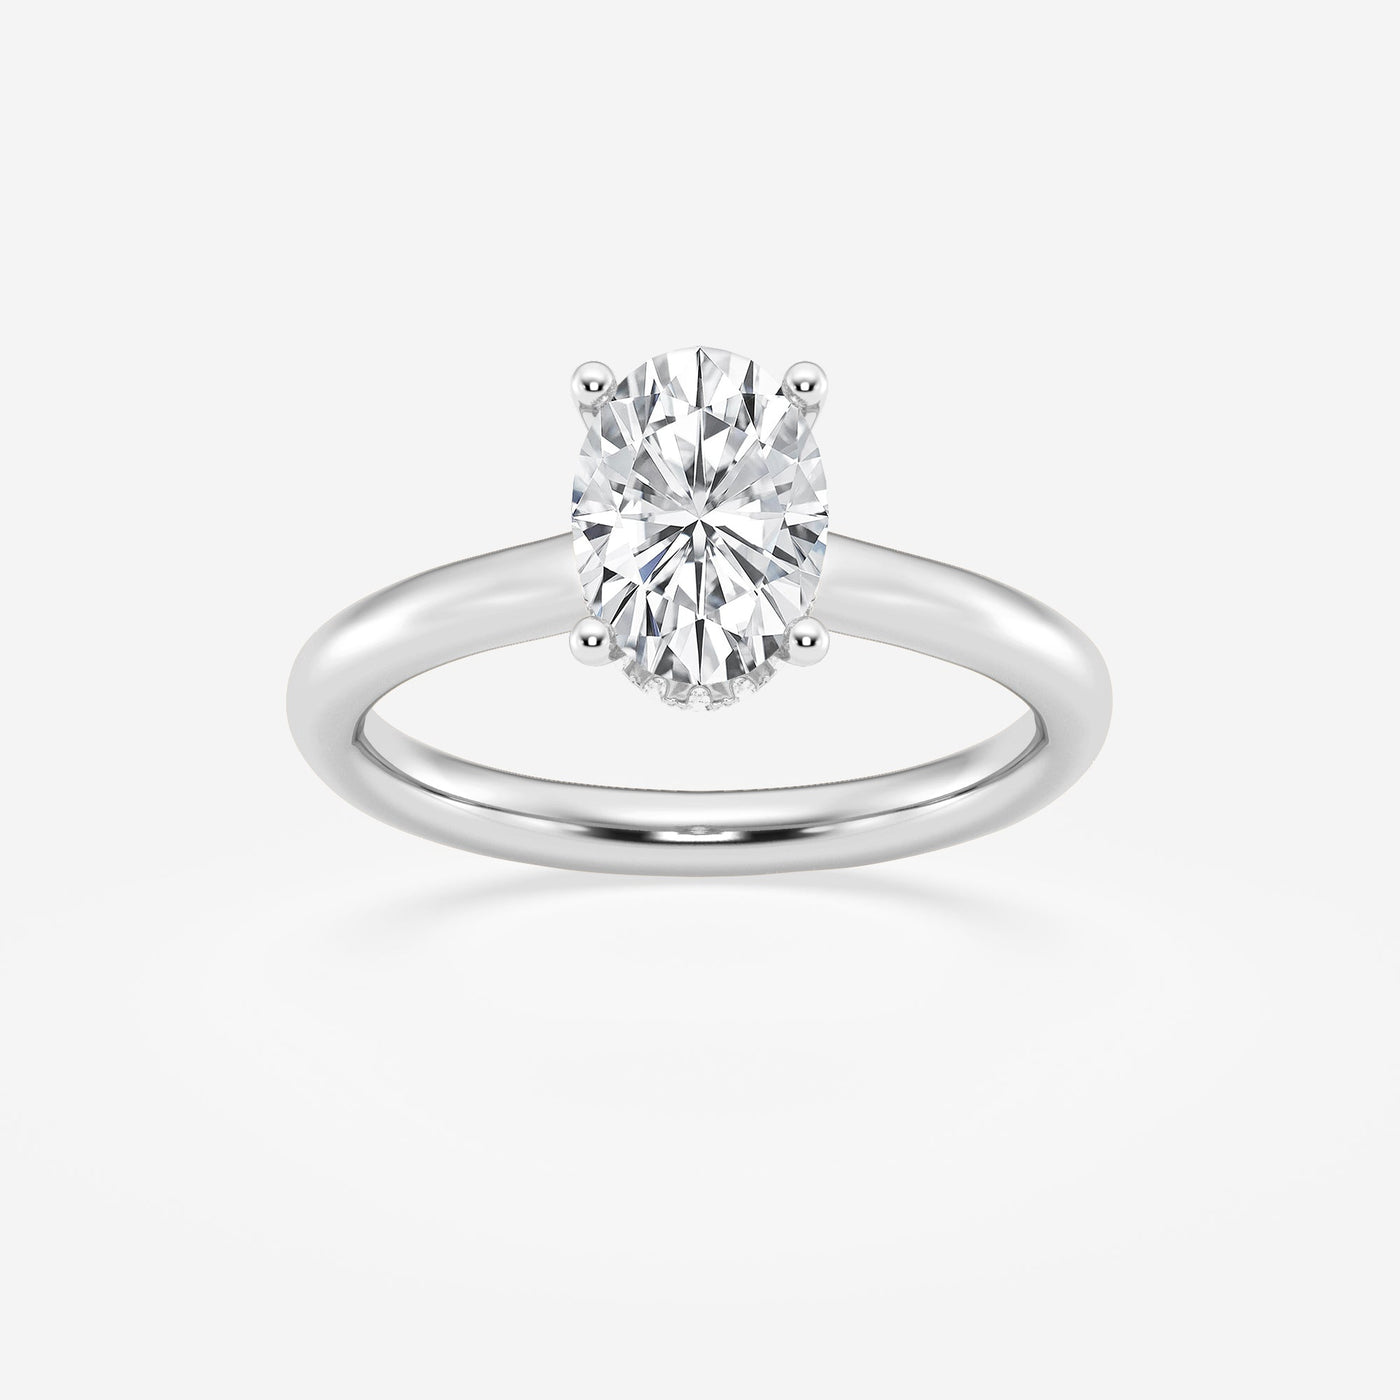 _main_image@SKU:LGDTXR08033O150HW3~#carat_1.50#diamond-quality_ef,-vs1+#metal_18k-white-gold